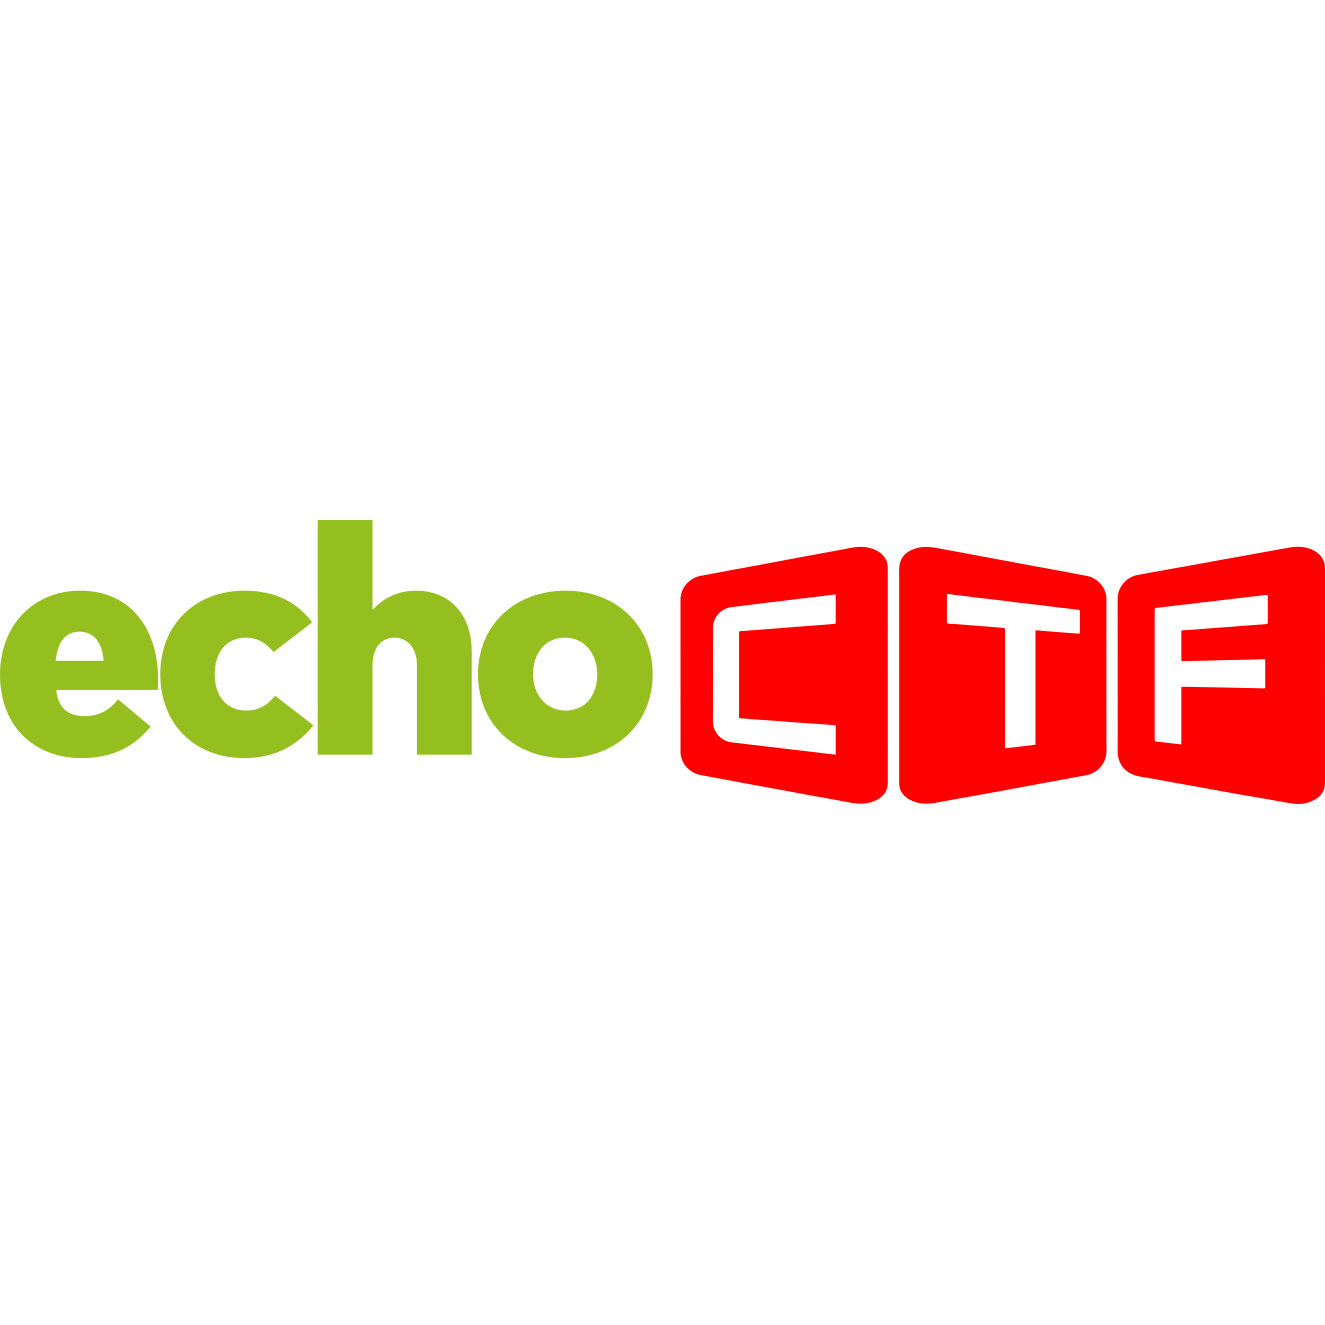 EchoCTF.RED